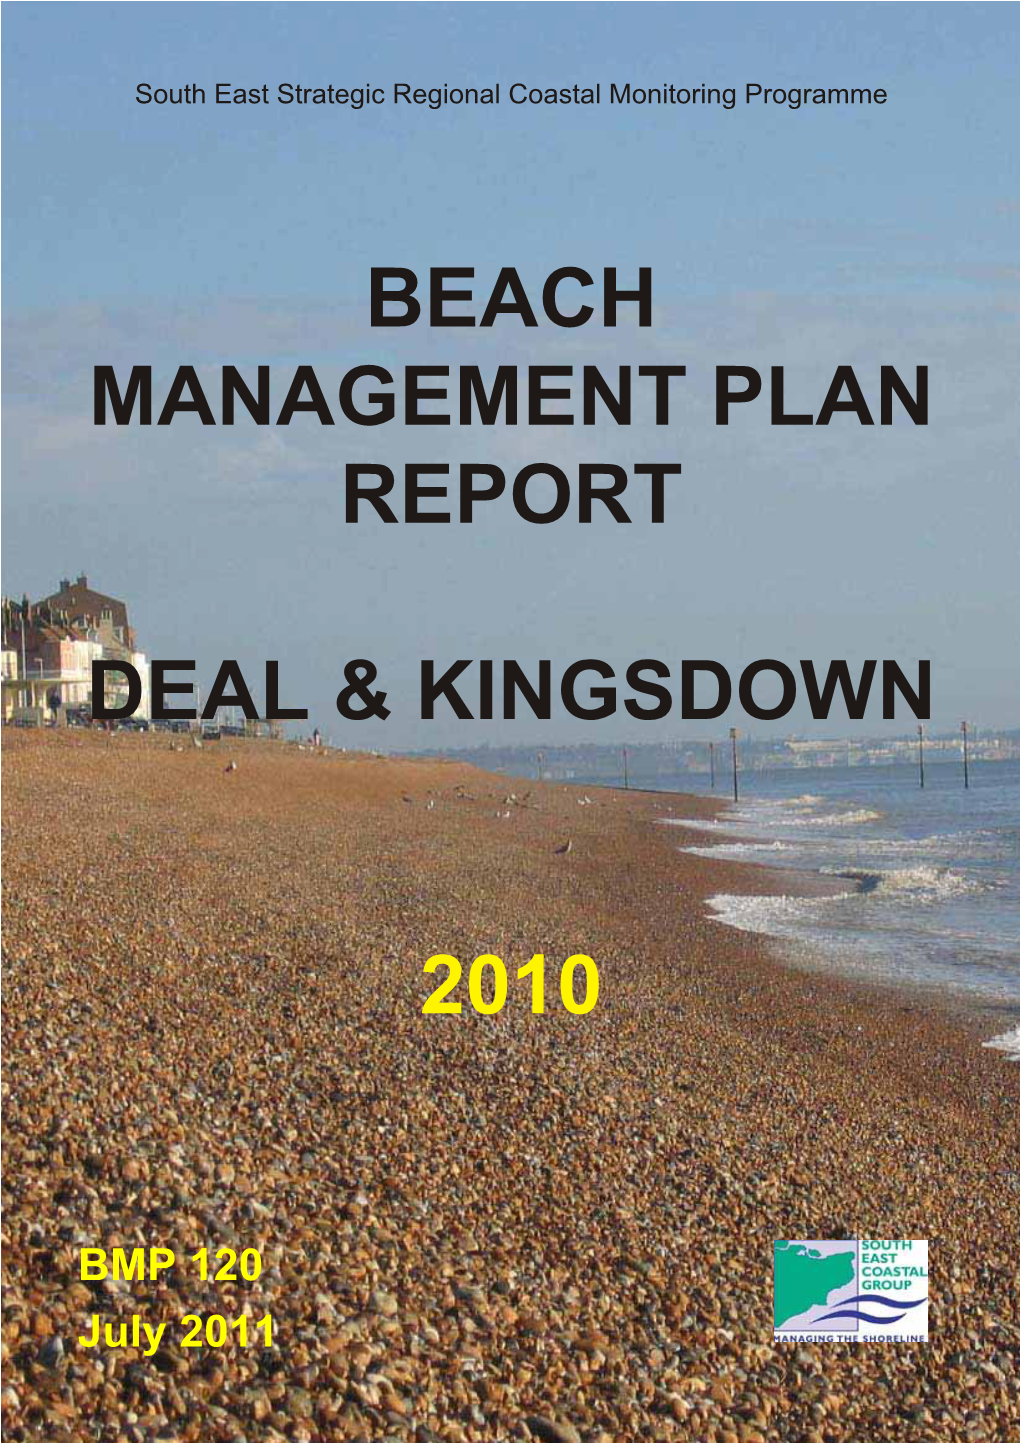 Beach Management Plan Report Deal & Kingsdown 2010